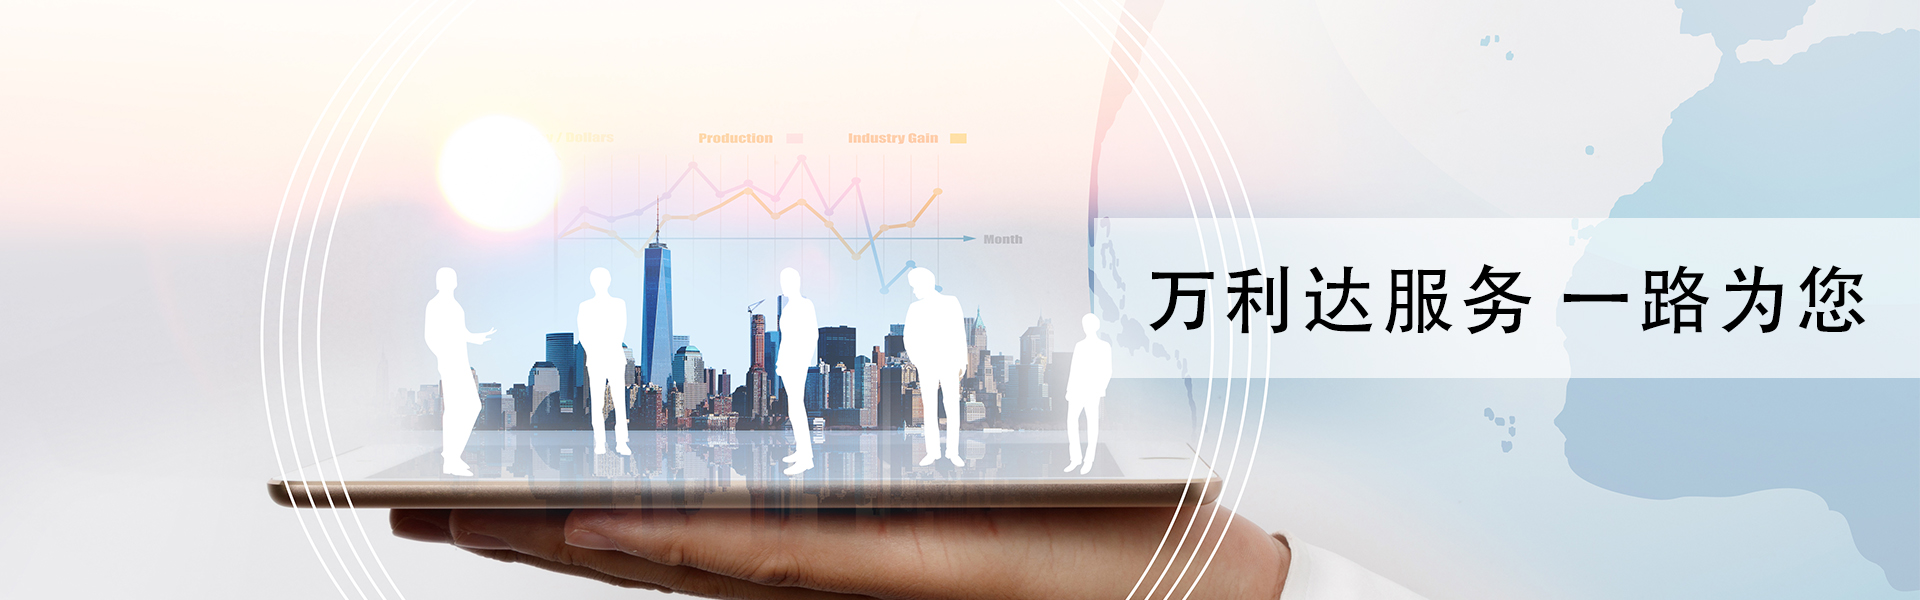 技术应用与支持_广州市天谱电器有限公司万利达品牌网站